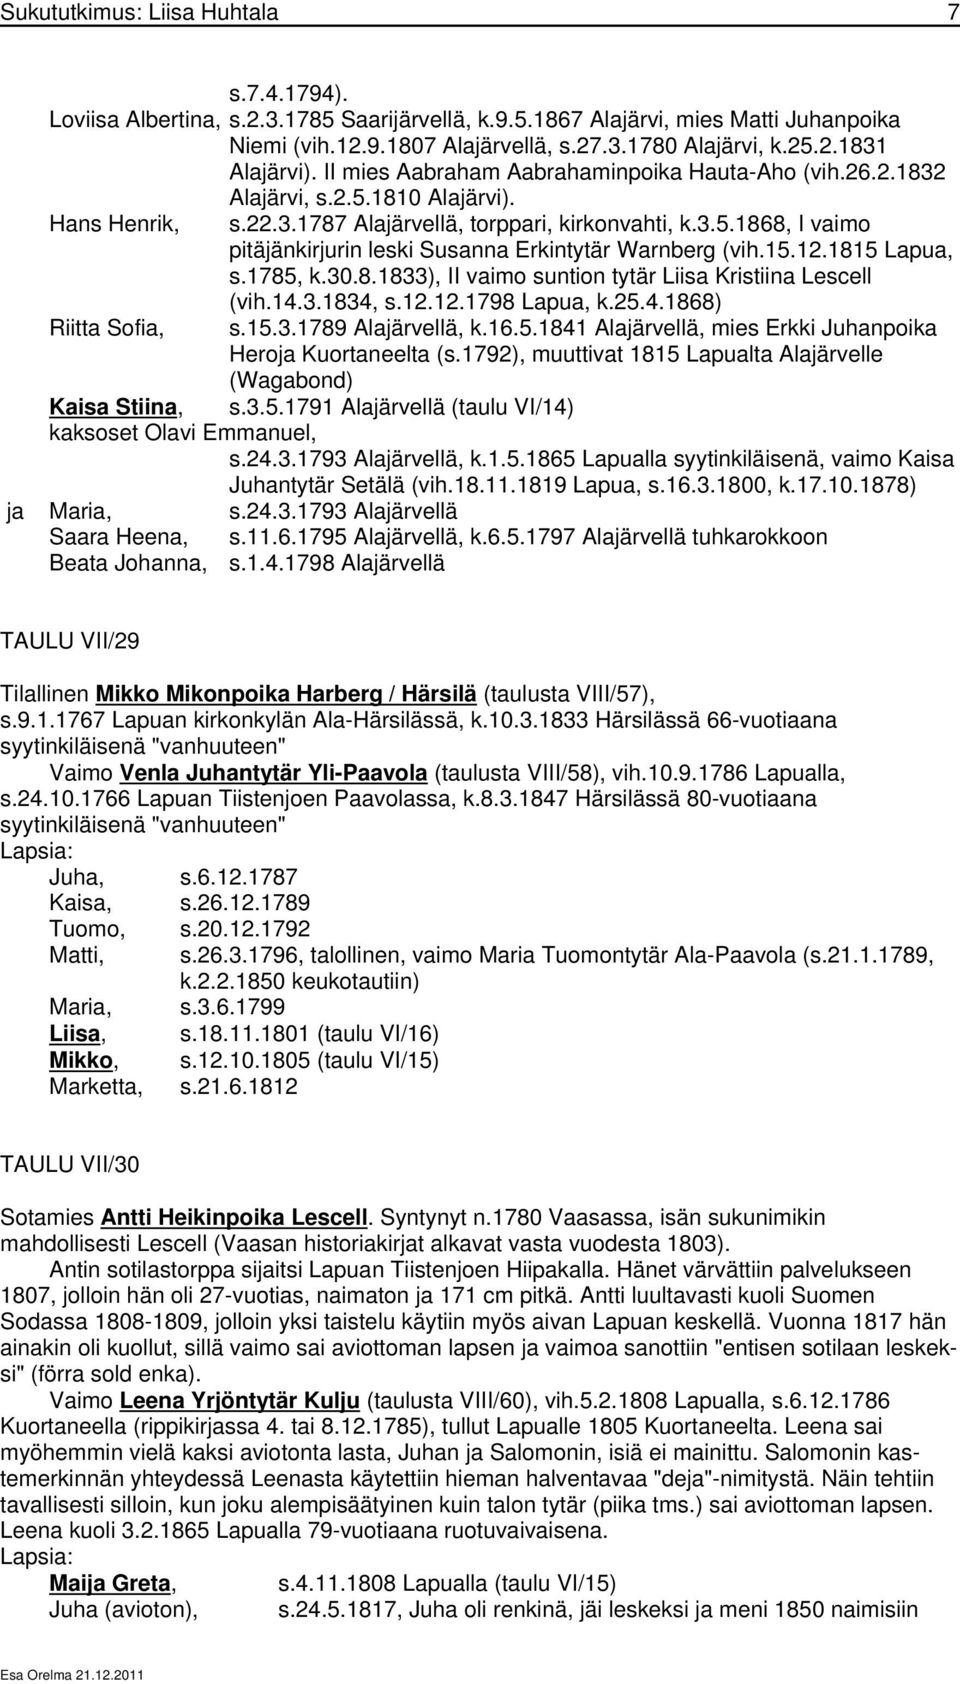 15.12.1815 Lapua, s.1785, k.30.8.1833), II vaimo suntion tytär Liisa Kristiina Lescell (vih.14.3.1834, s.12.12.1798 Lapua, k.25.4.1868) Riitta Sofia, s.15.3.1789 Alajärvellä, k.16.5.1841 Alajärvellä, mies Erkki Juhanpoika Heroja Kuortaneelta (s.